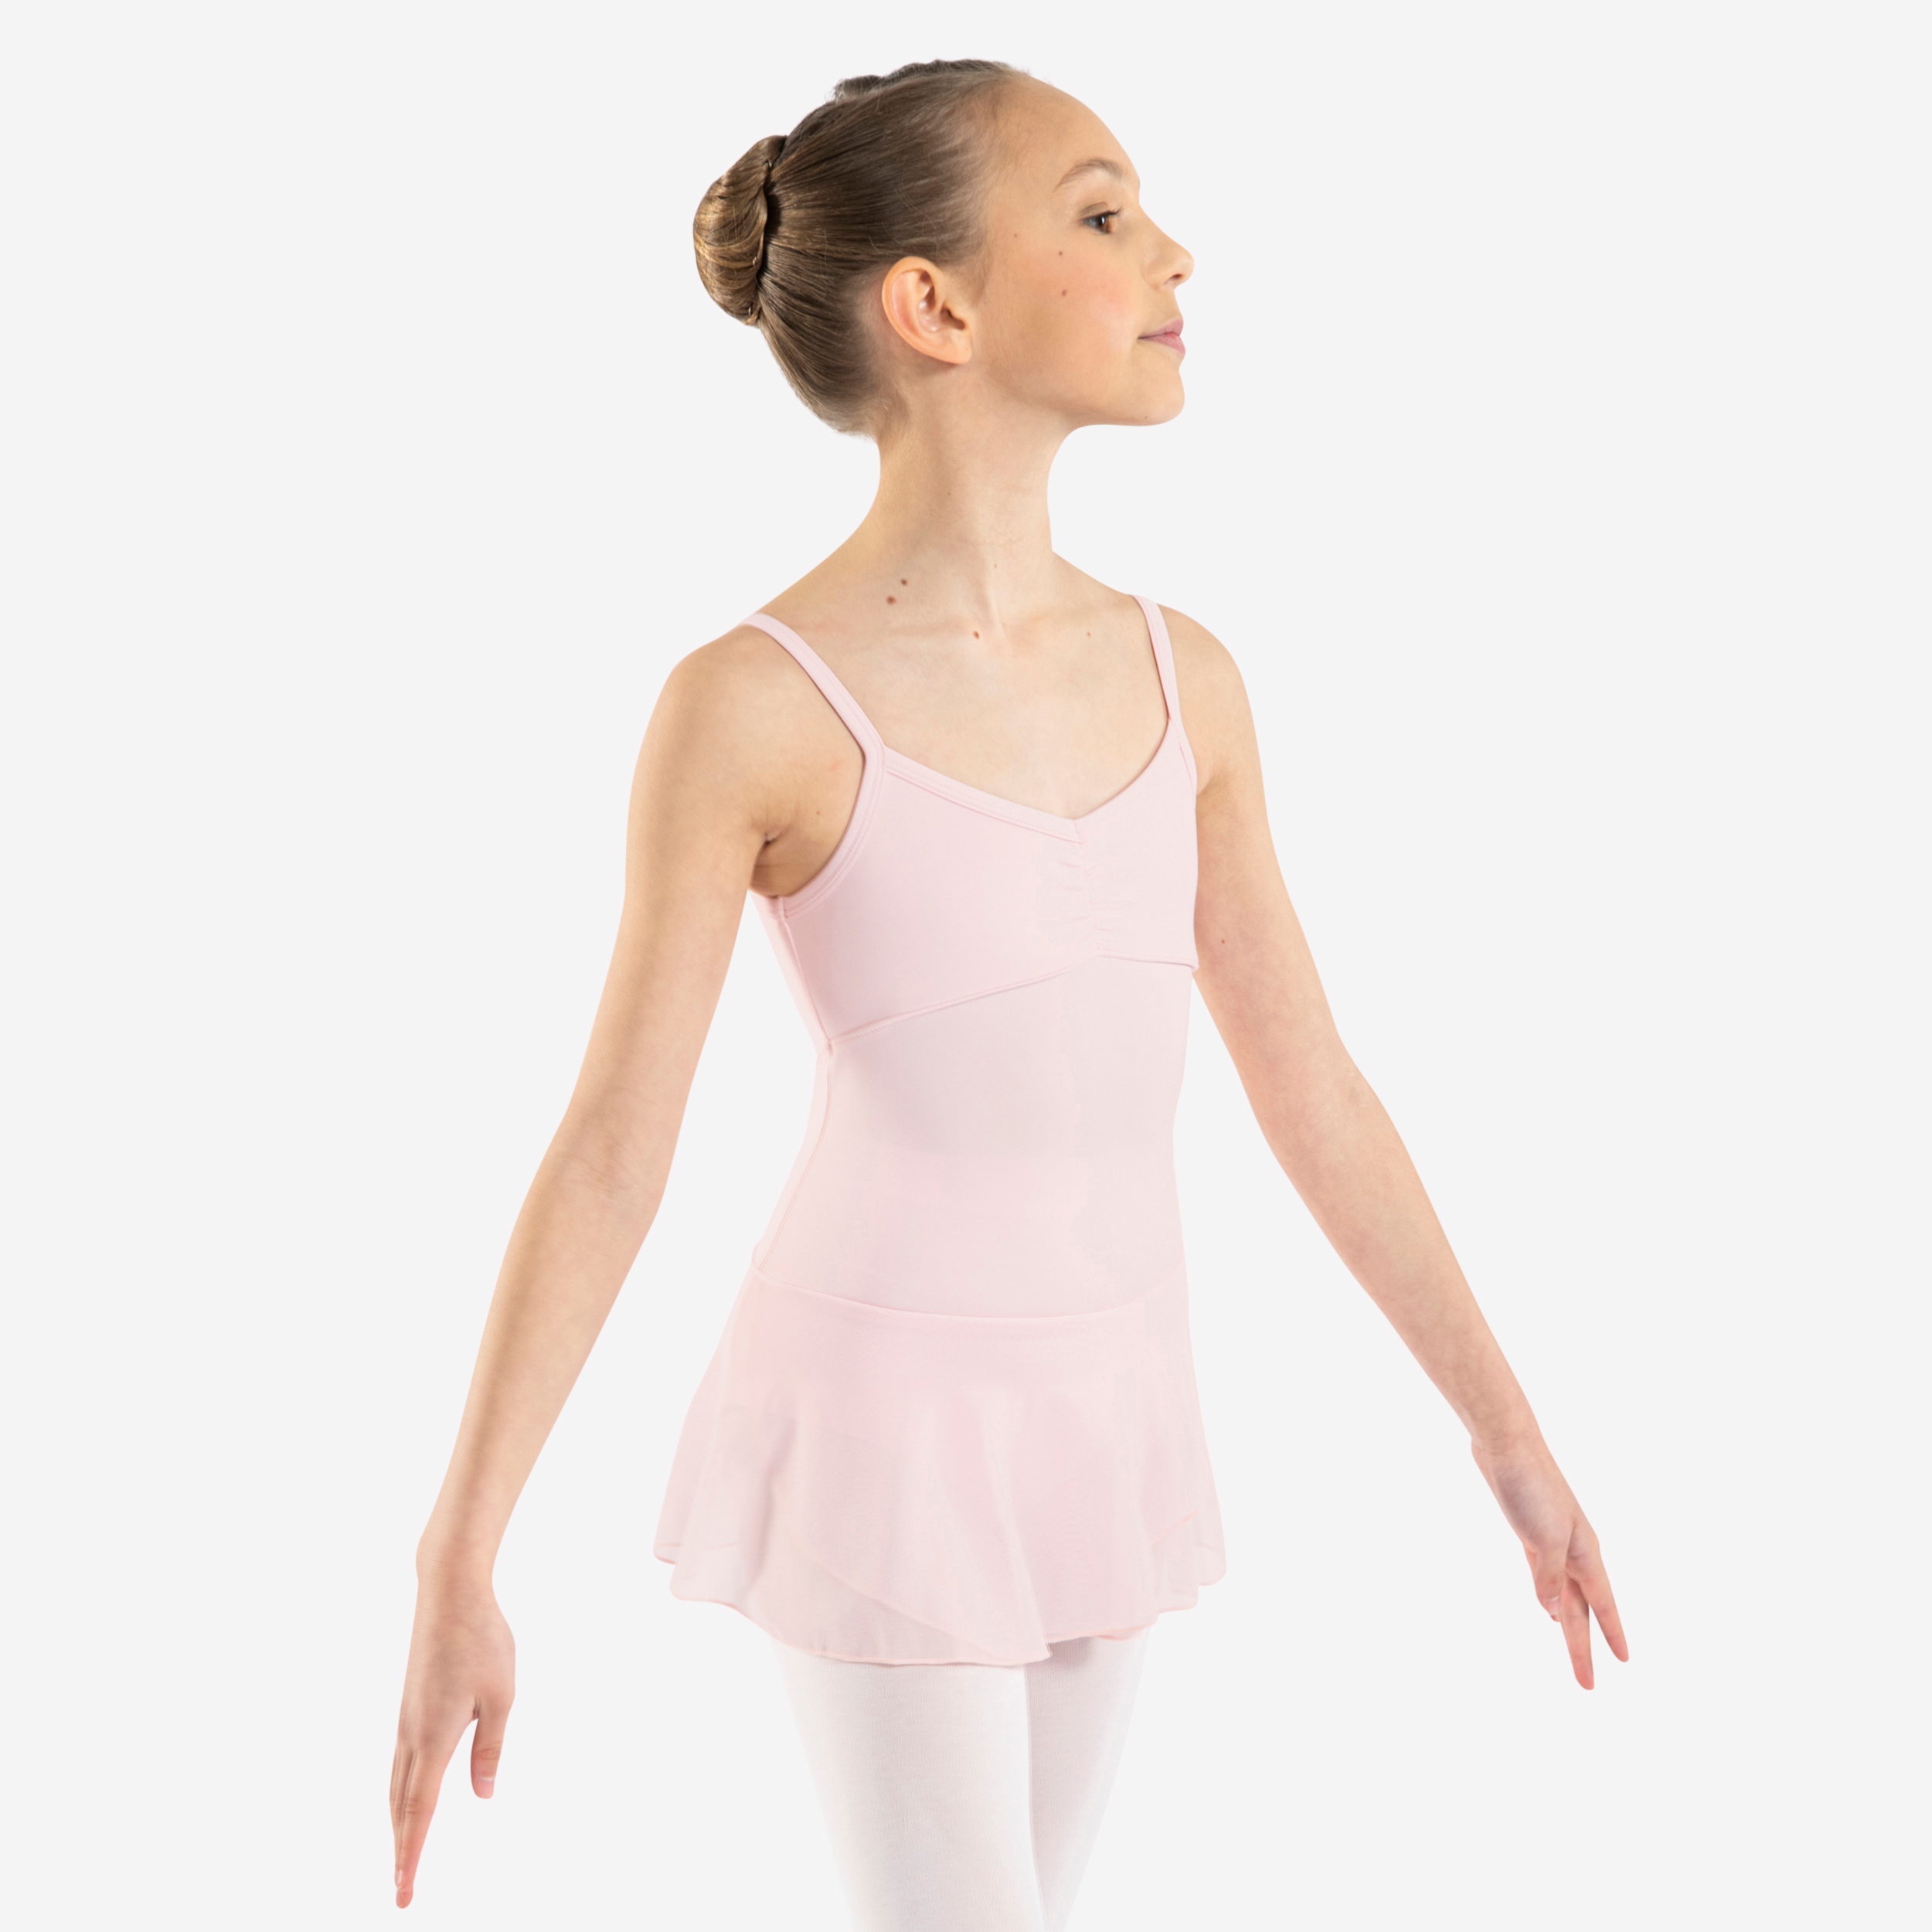 Tunique de danse classique fille rose pâle.